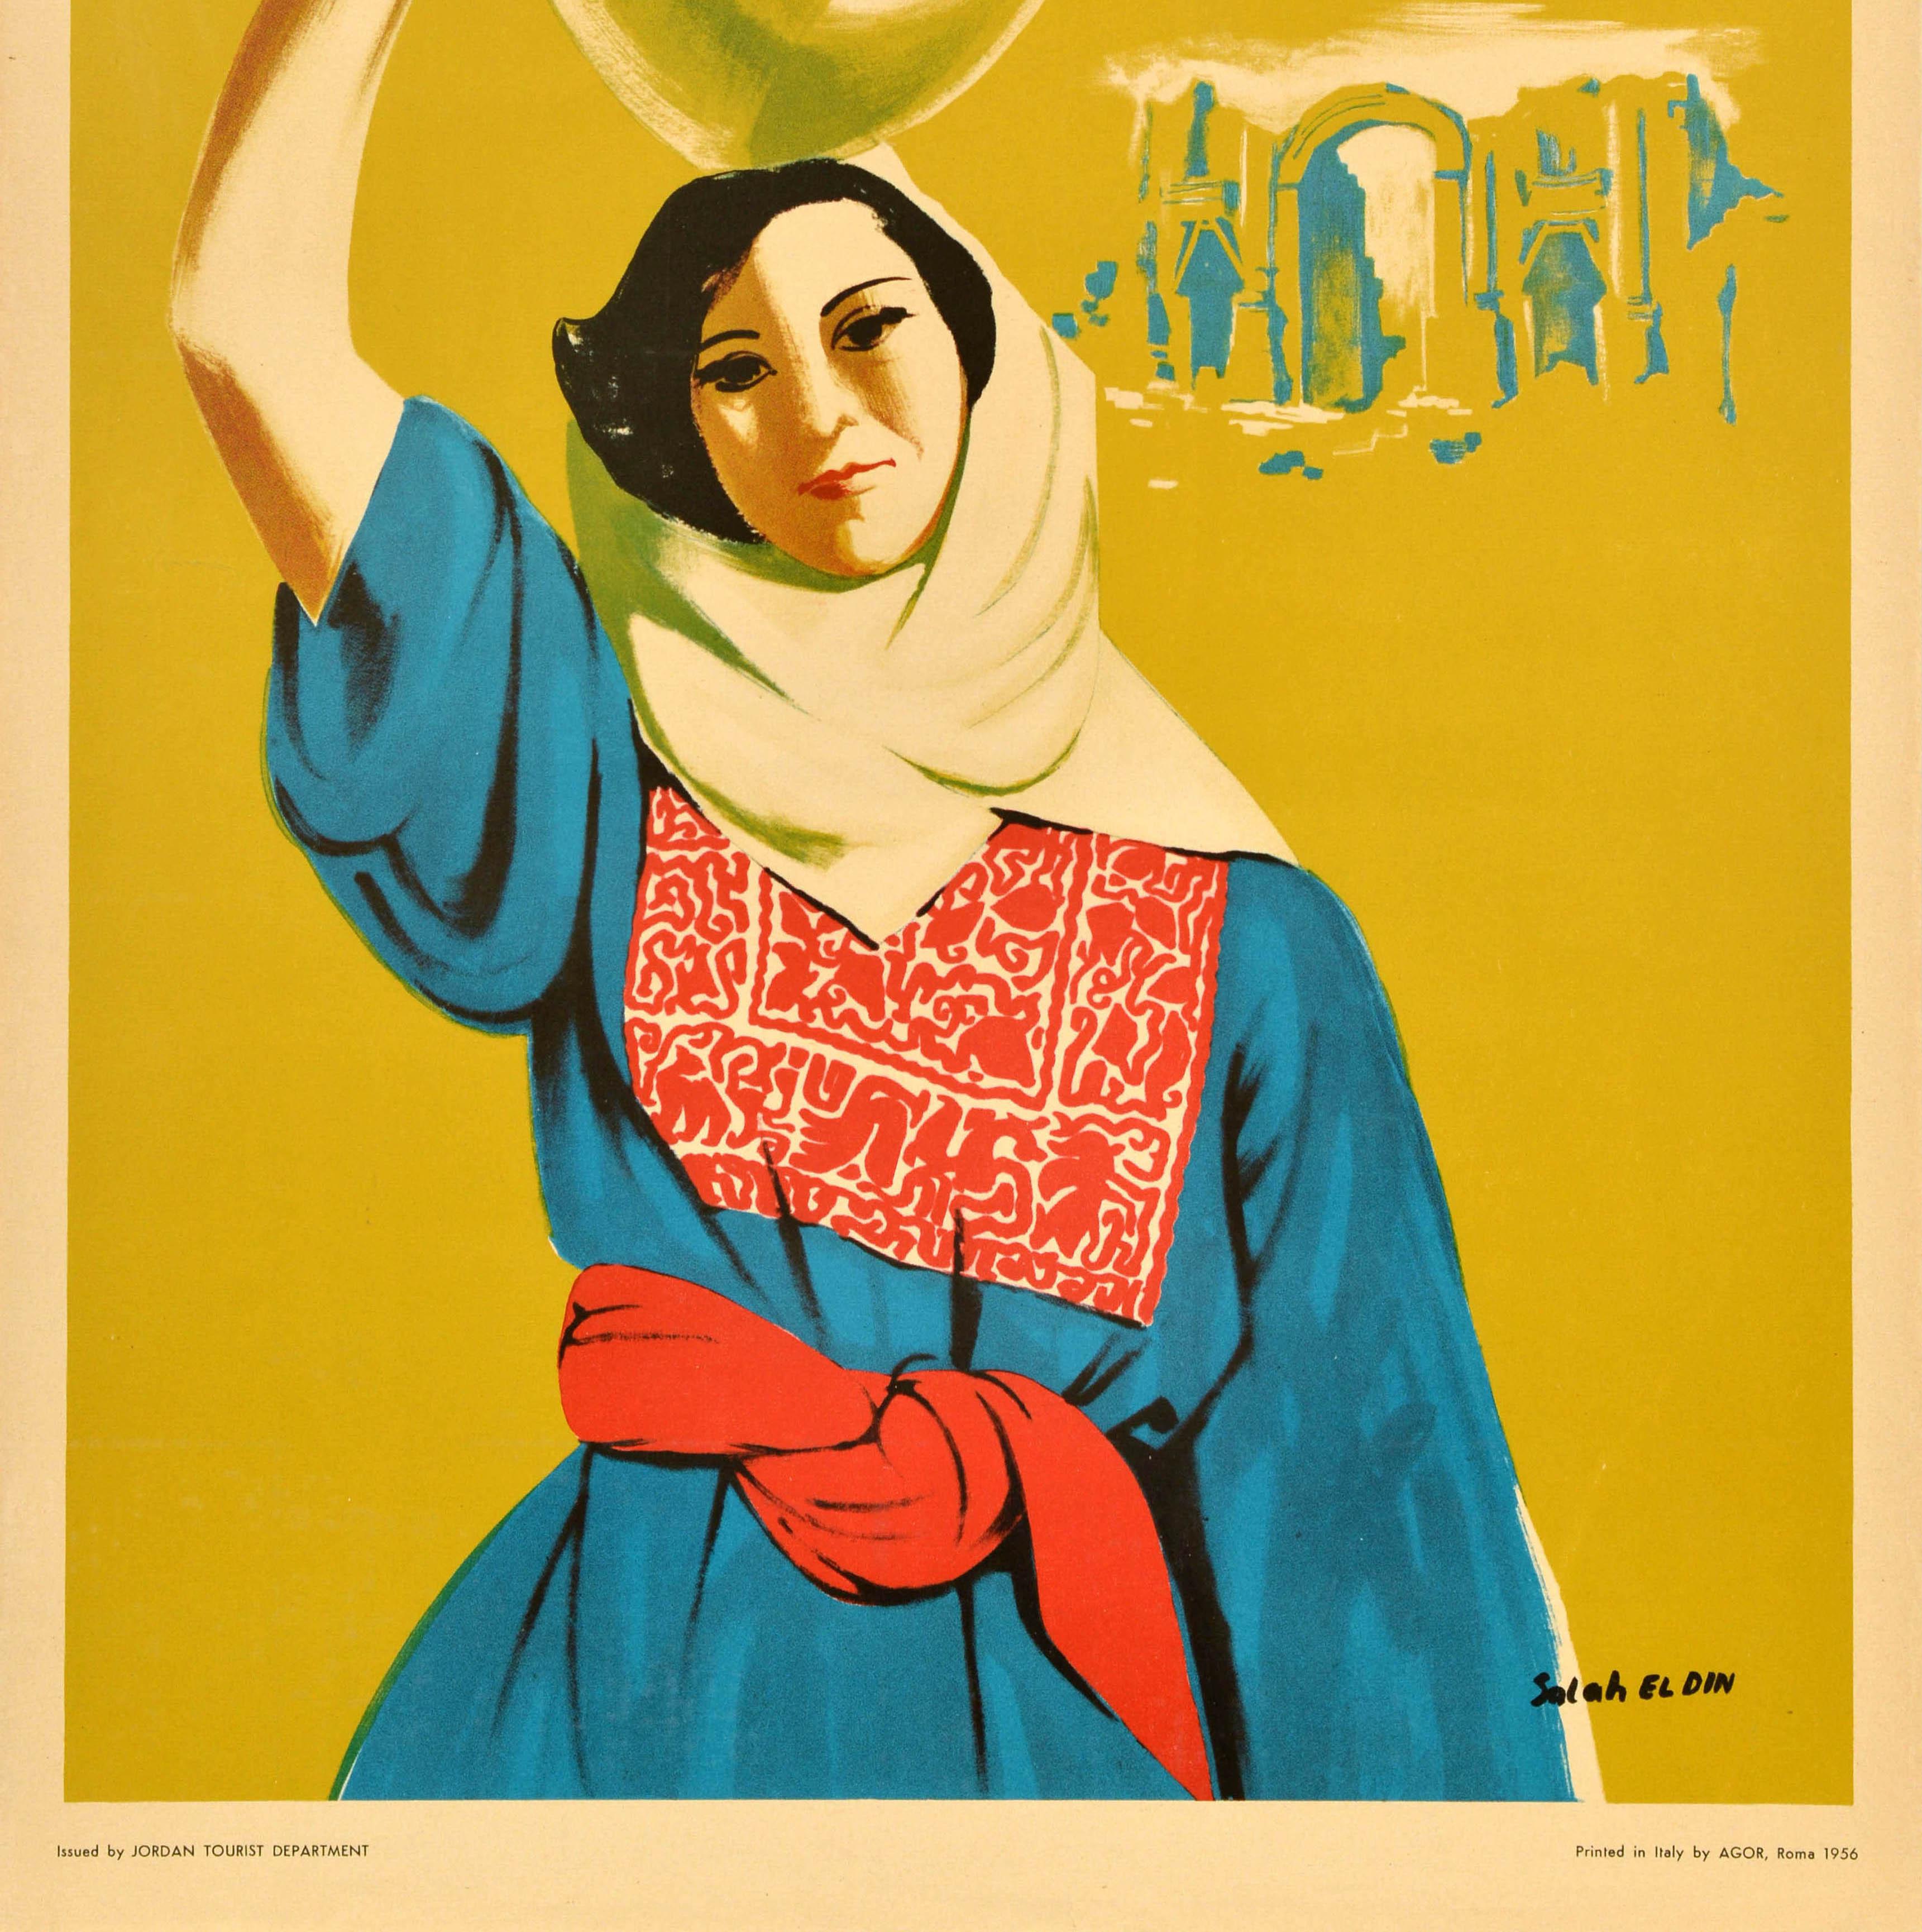 Original Vintage-Reiseplakat - Visit Jordan - mit einer großartigen Illustration einer Dame in traditioneller Kleidung, die einen Krug auf dem Kopf trägt, mit antiken Ruinen im Hintergrund, vor einem senfgelben Hintergrund mit dem Titel in fetten